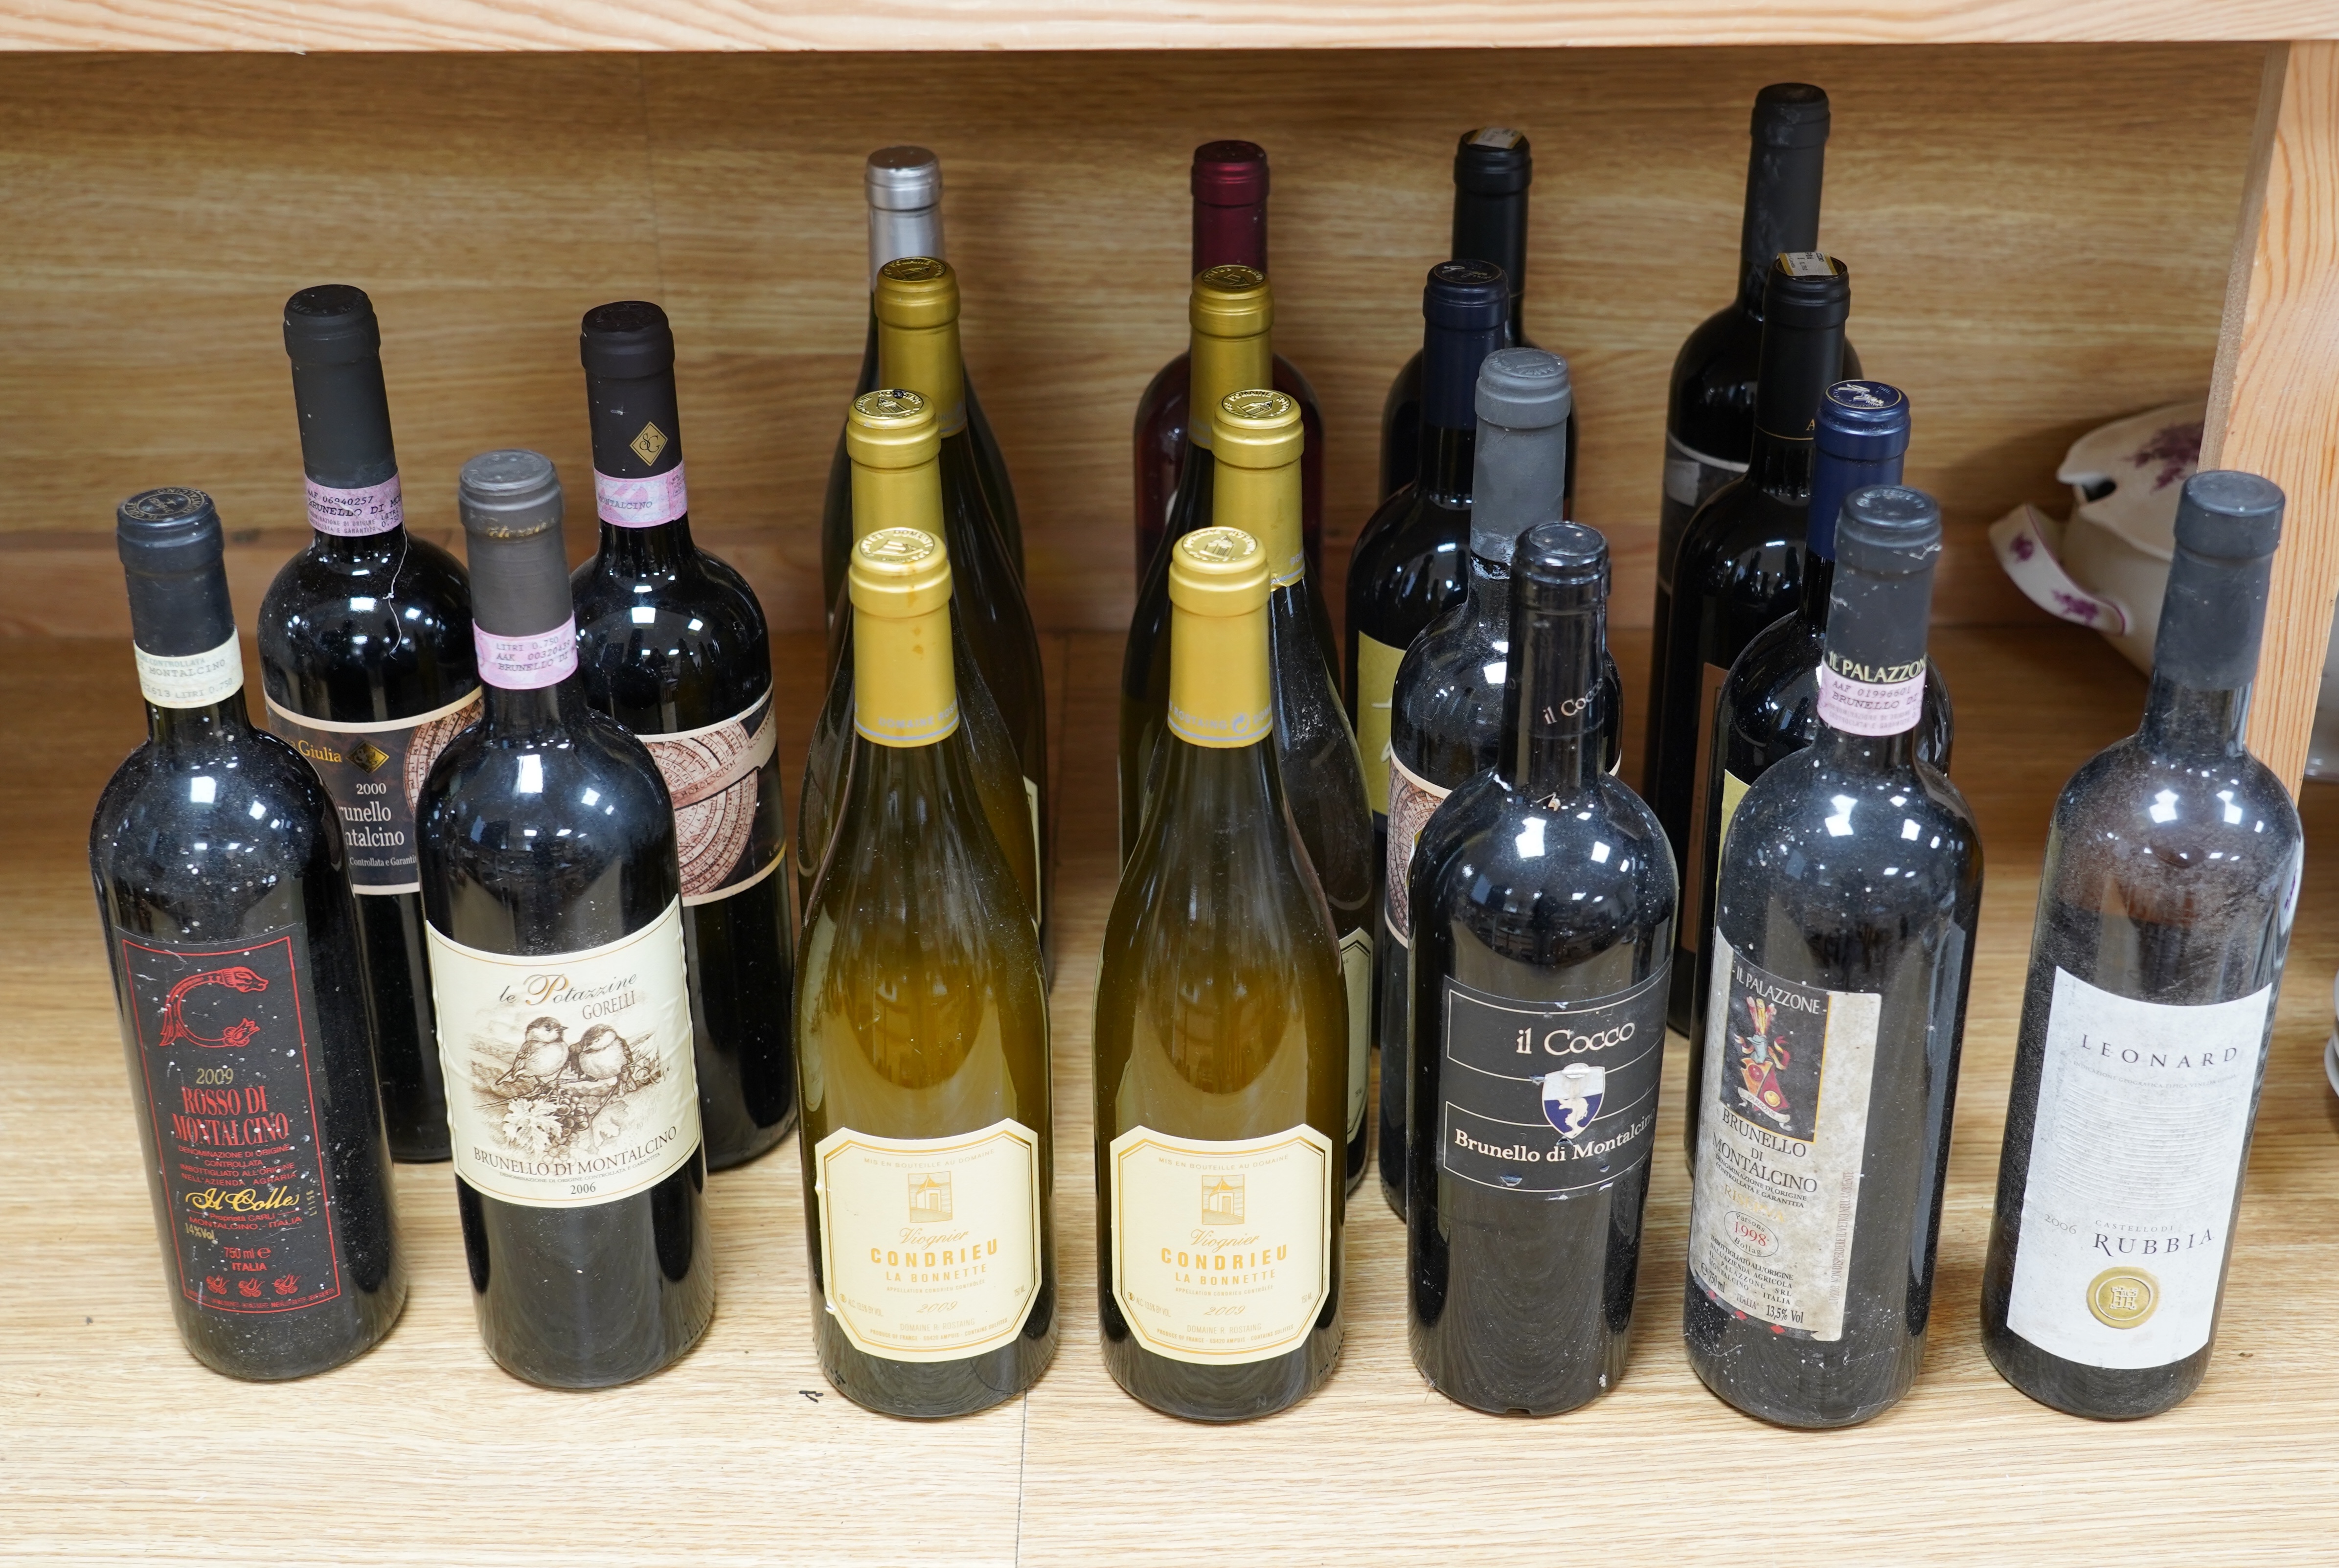 Twenty one bottles of wine including six bottles of Viognier Condrieu La Bonnette 2009